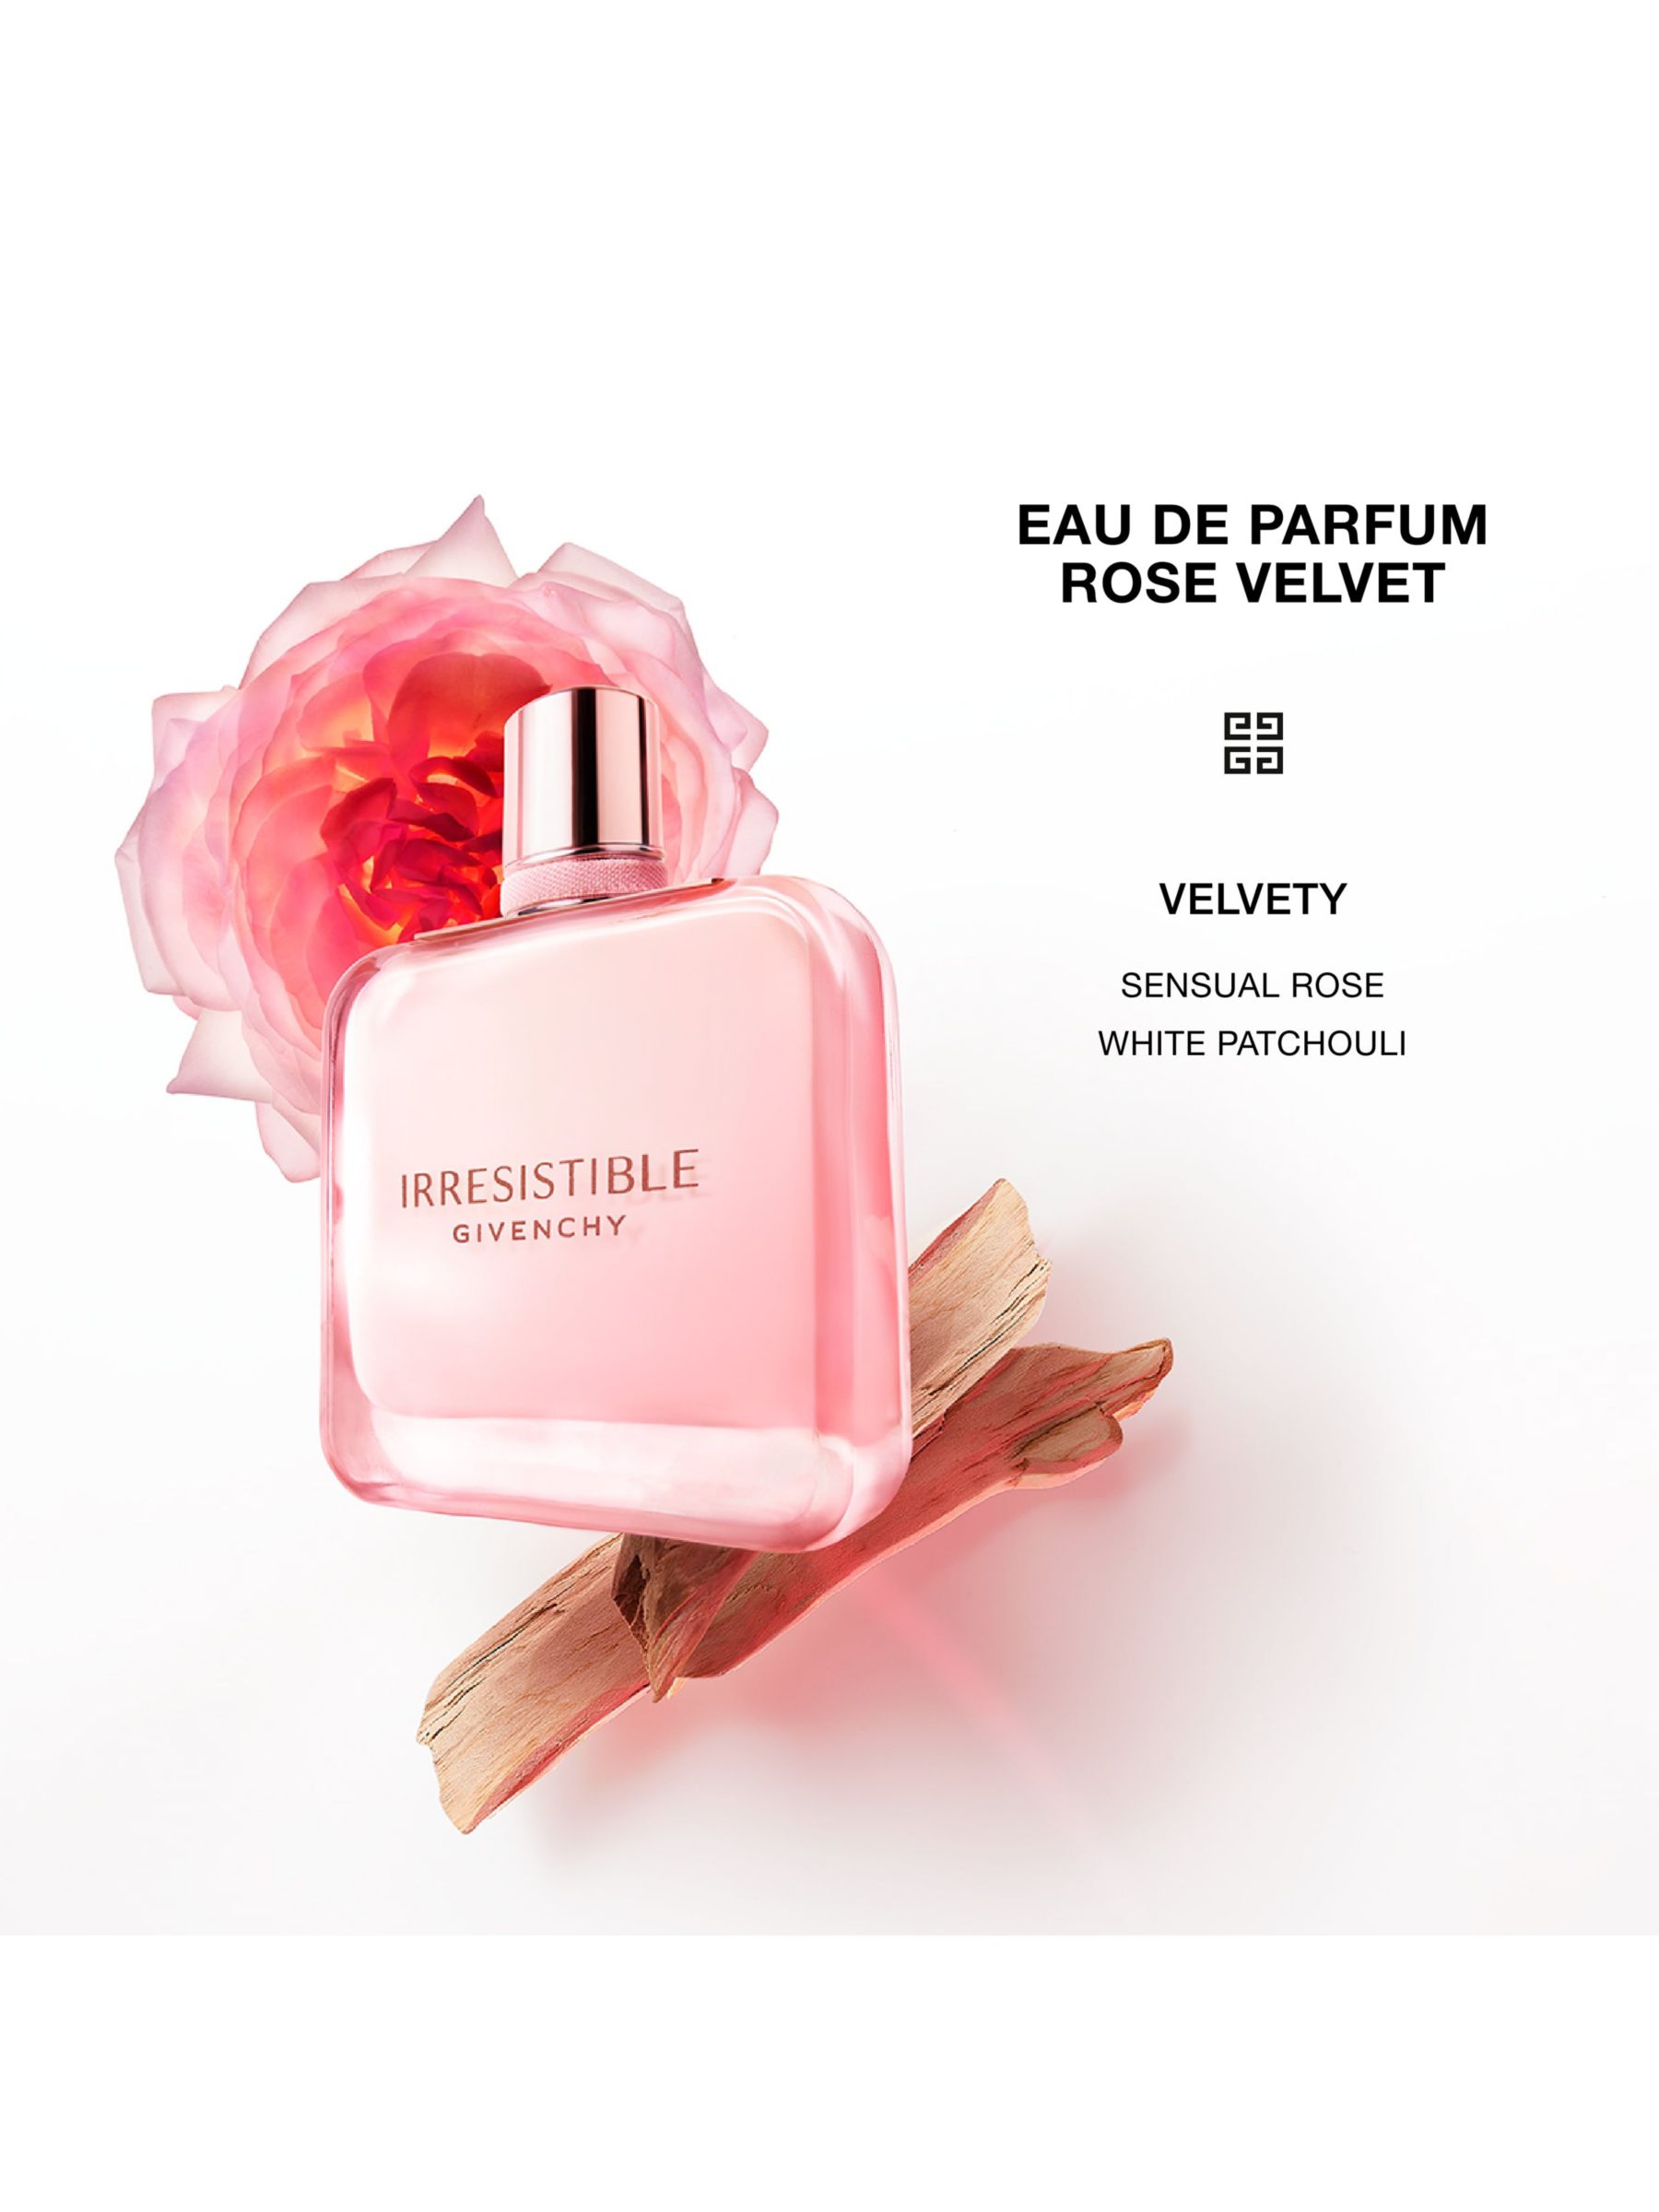 Givenchy Irresistible Rose Velvet Eau de Parfum, 35ml at John Lewis ...